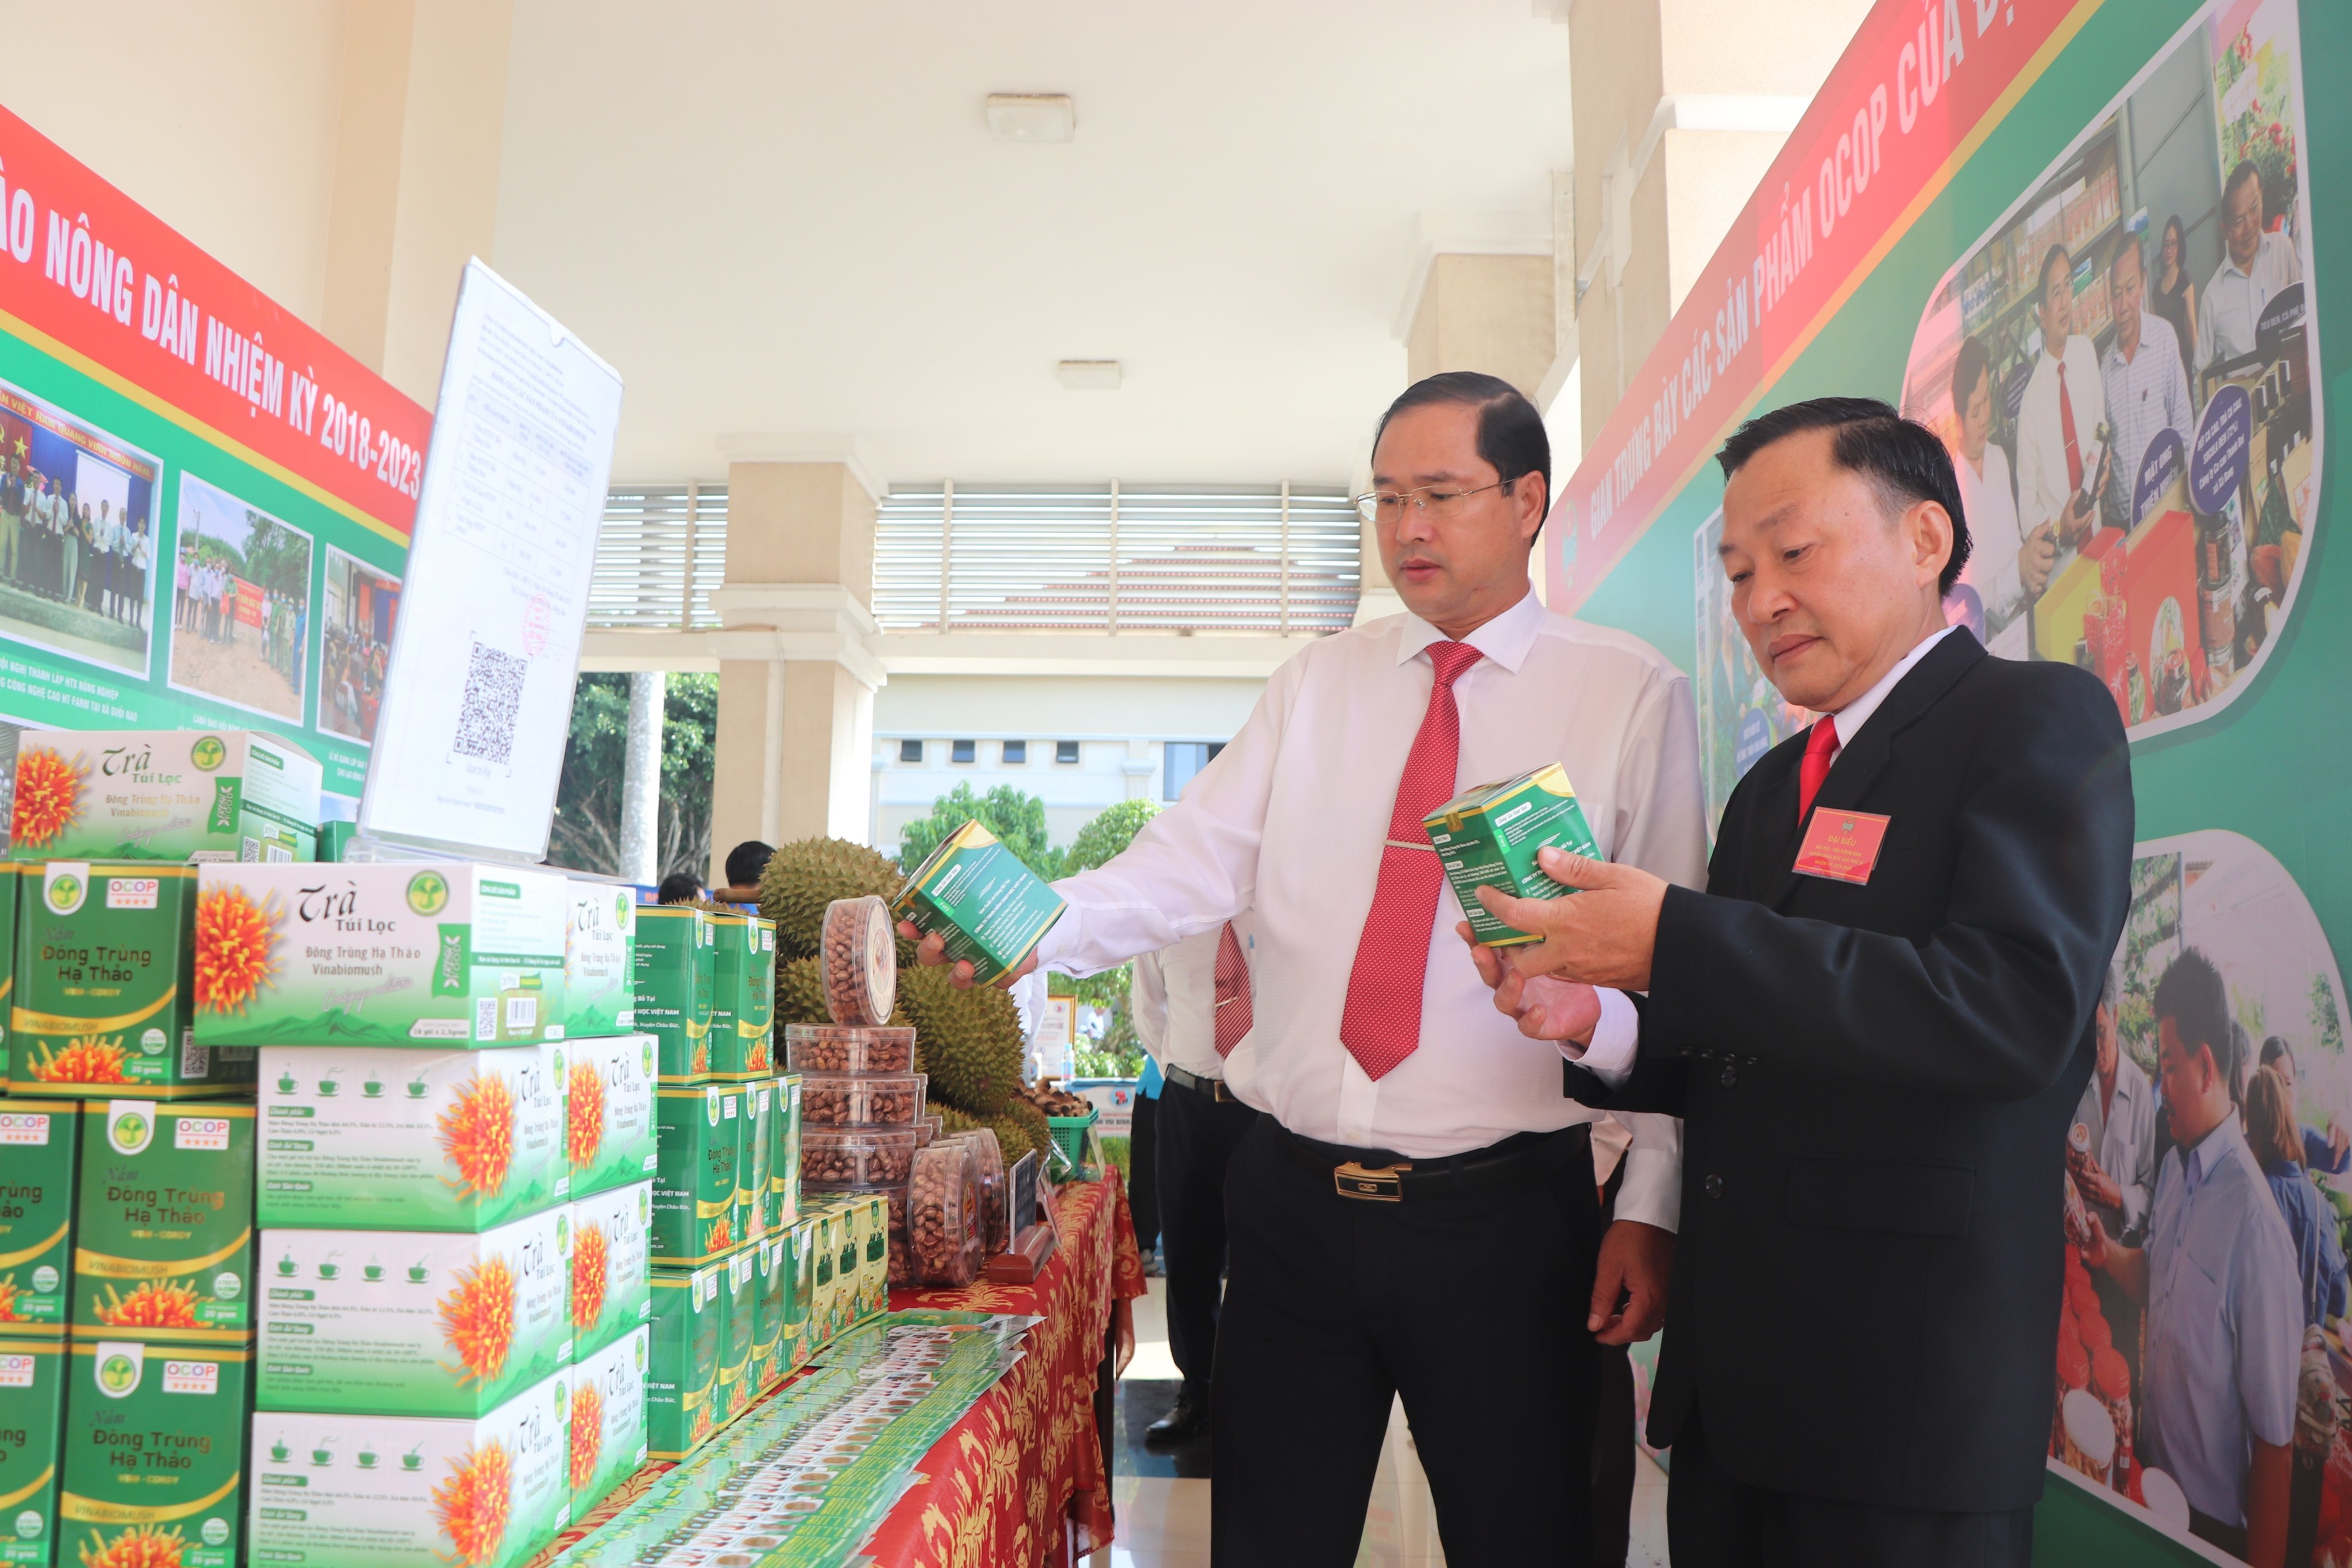 Ông Nguyễn Tấn Bản, Chủ tịch UBND Châu Đức và các đại biểu tham quan quầy trưng bày nấm đông trùng hạ thảo – sản phẩm OCOP 4 sao của anh Trần tài, xã Bàu Chinh.